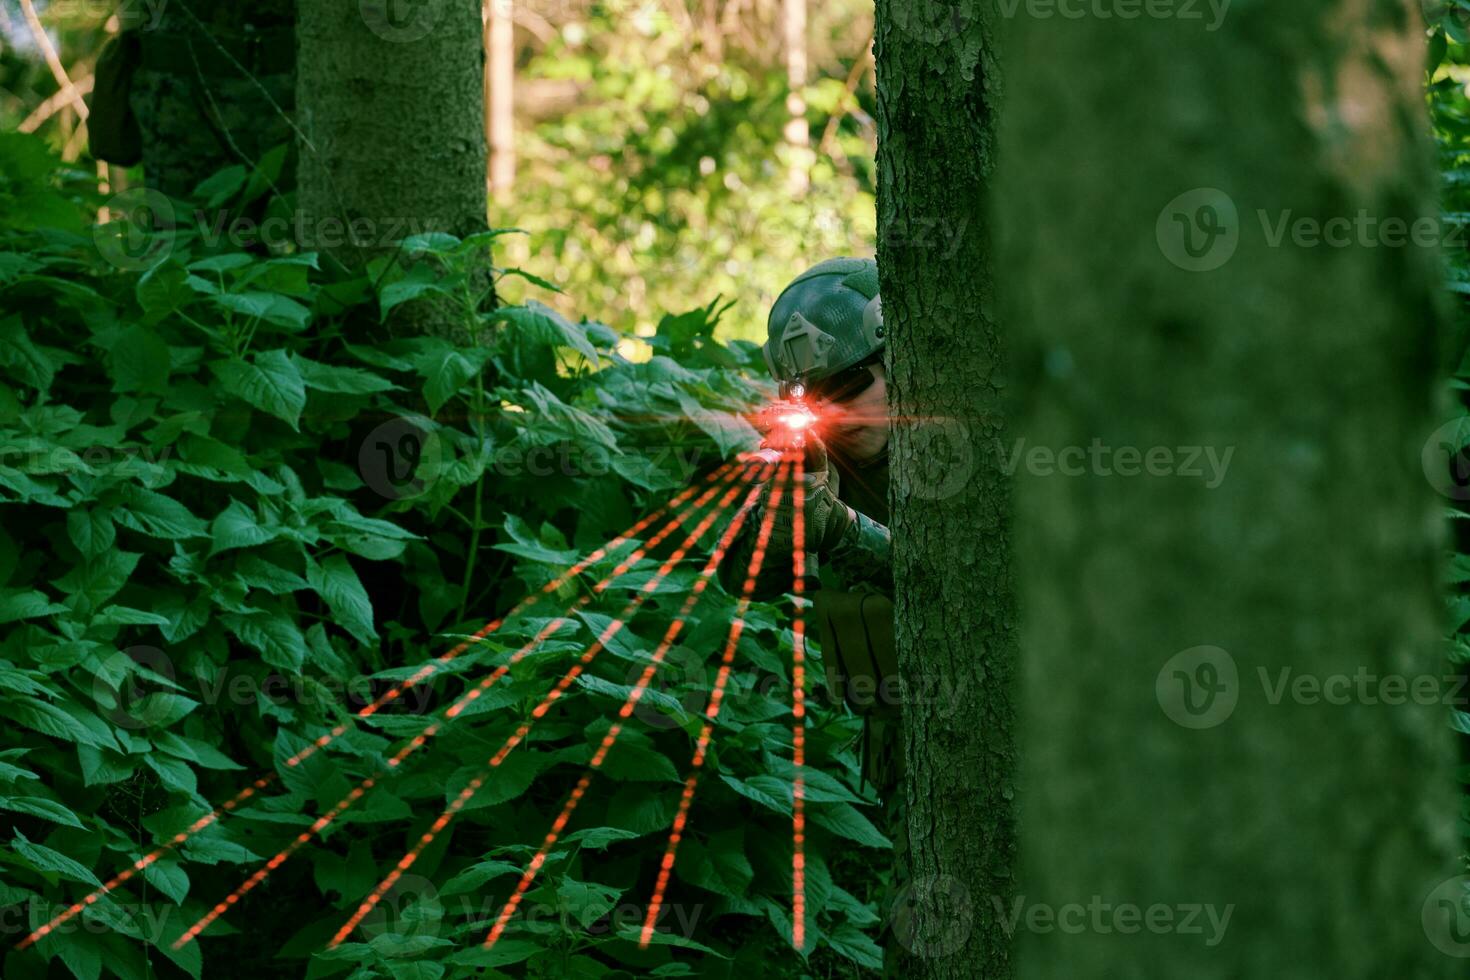 soldaat in actie het richten Aan laser zicht optiek foto